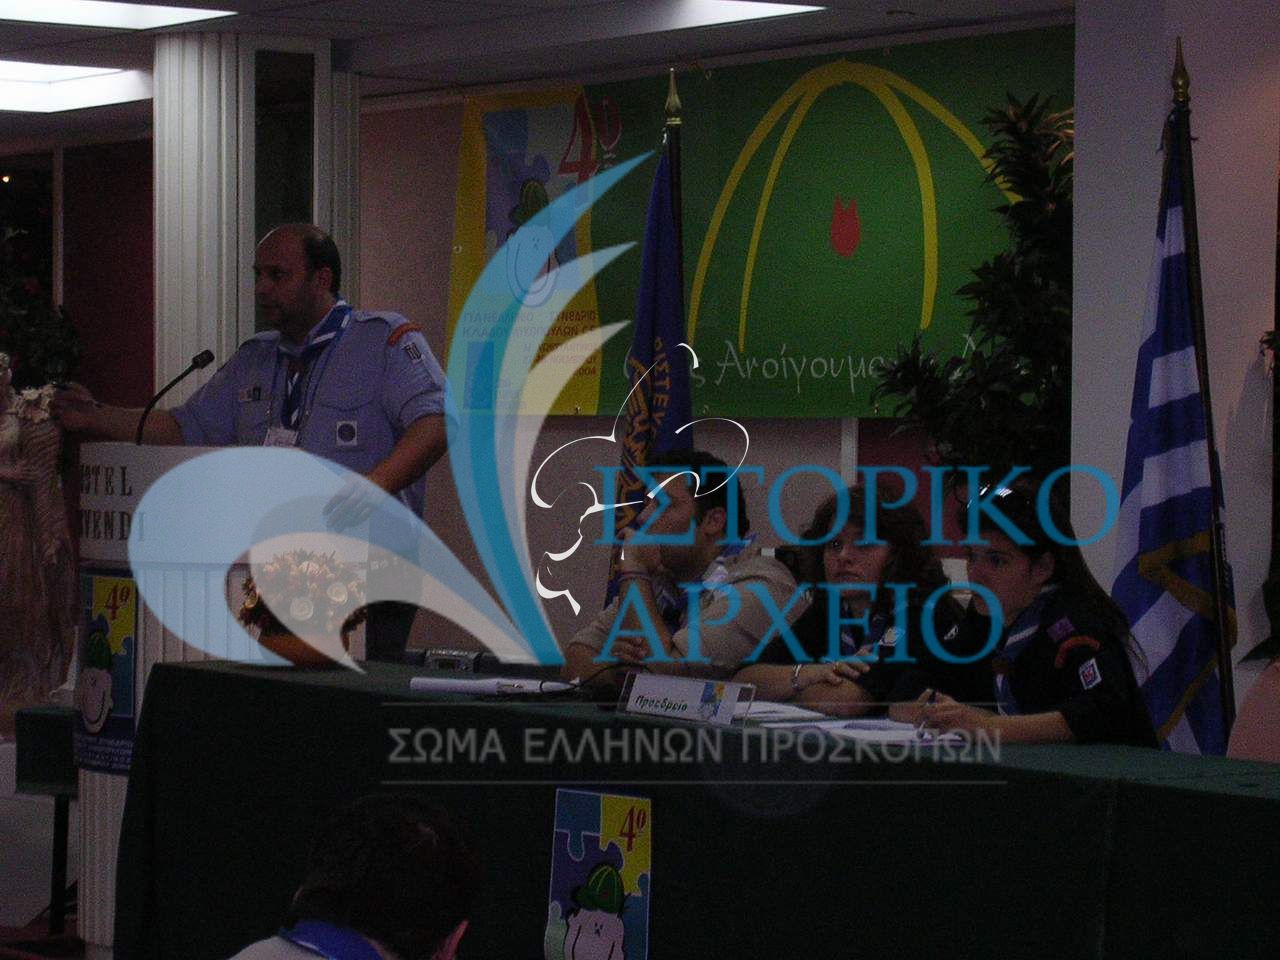 Οι βαθμοφόροι που συμμετείχαν στο 4ο Πανελλήνιο Συνεδρίου Κλάδου Λυκοπούλων Γενικής Εφορείας το 2004. Στο βήμα ο Έφορος Κλάδου Λυκοπούλων της ΓΕ Π. Κόλλιας.